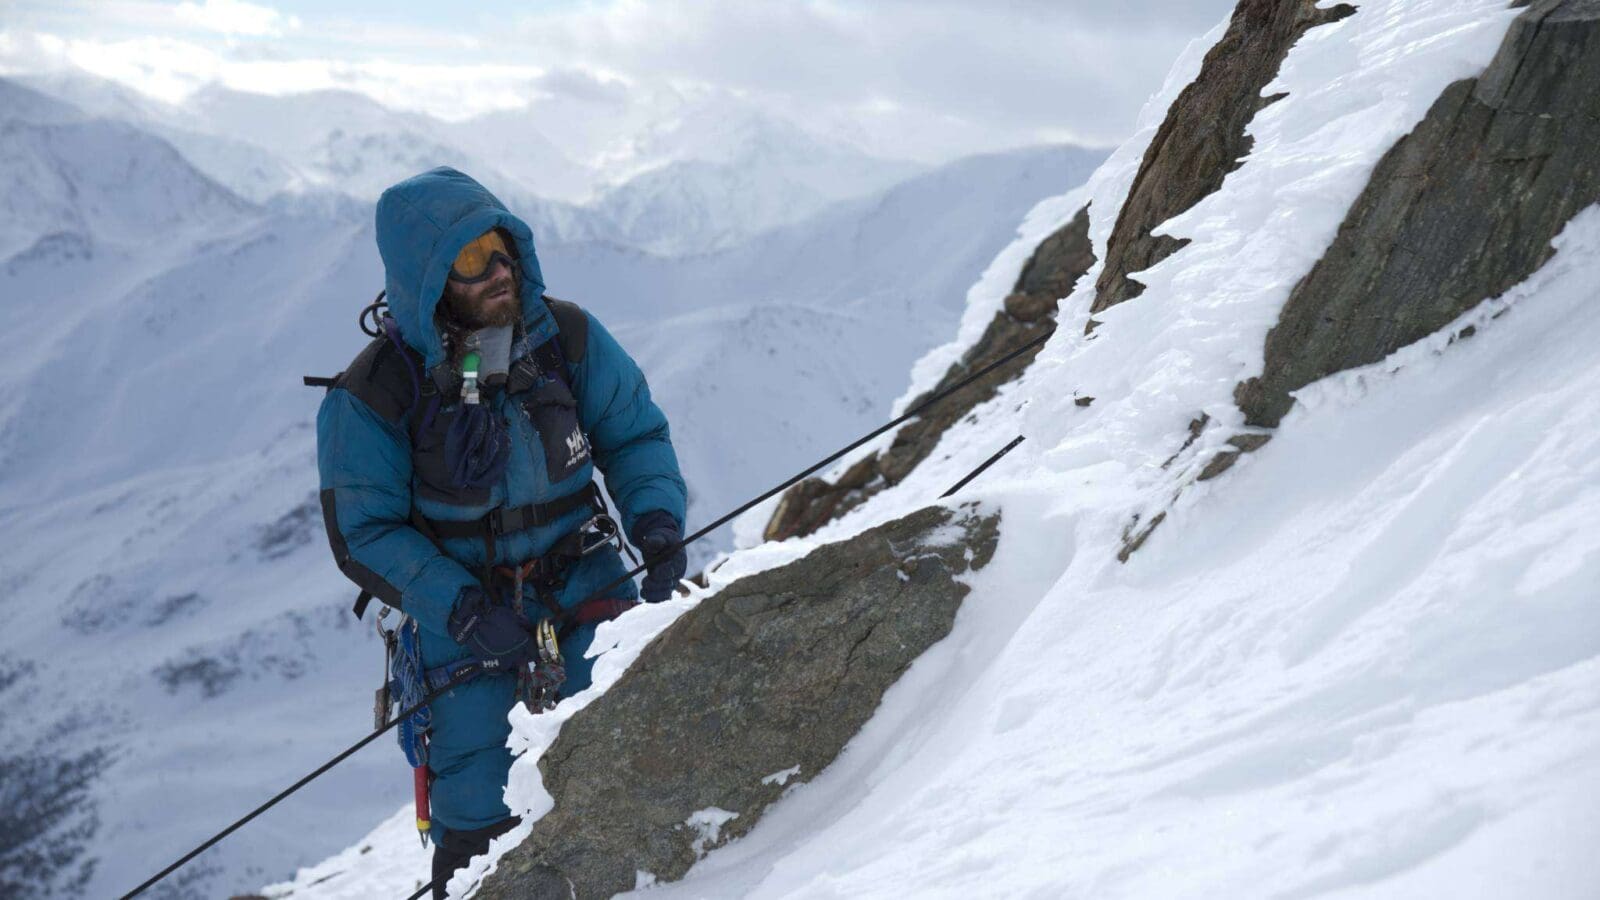 OXMOX Kino-Tipp: Everest [3D] US/GB 15, ab 17.09., R: B. Kormákur